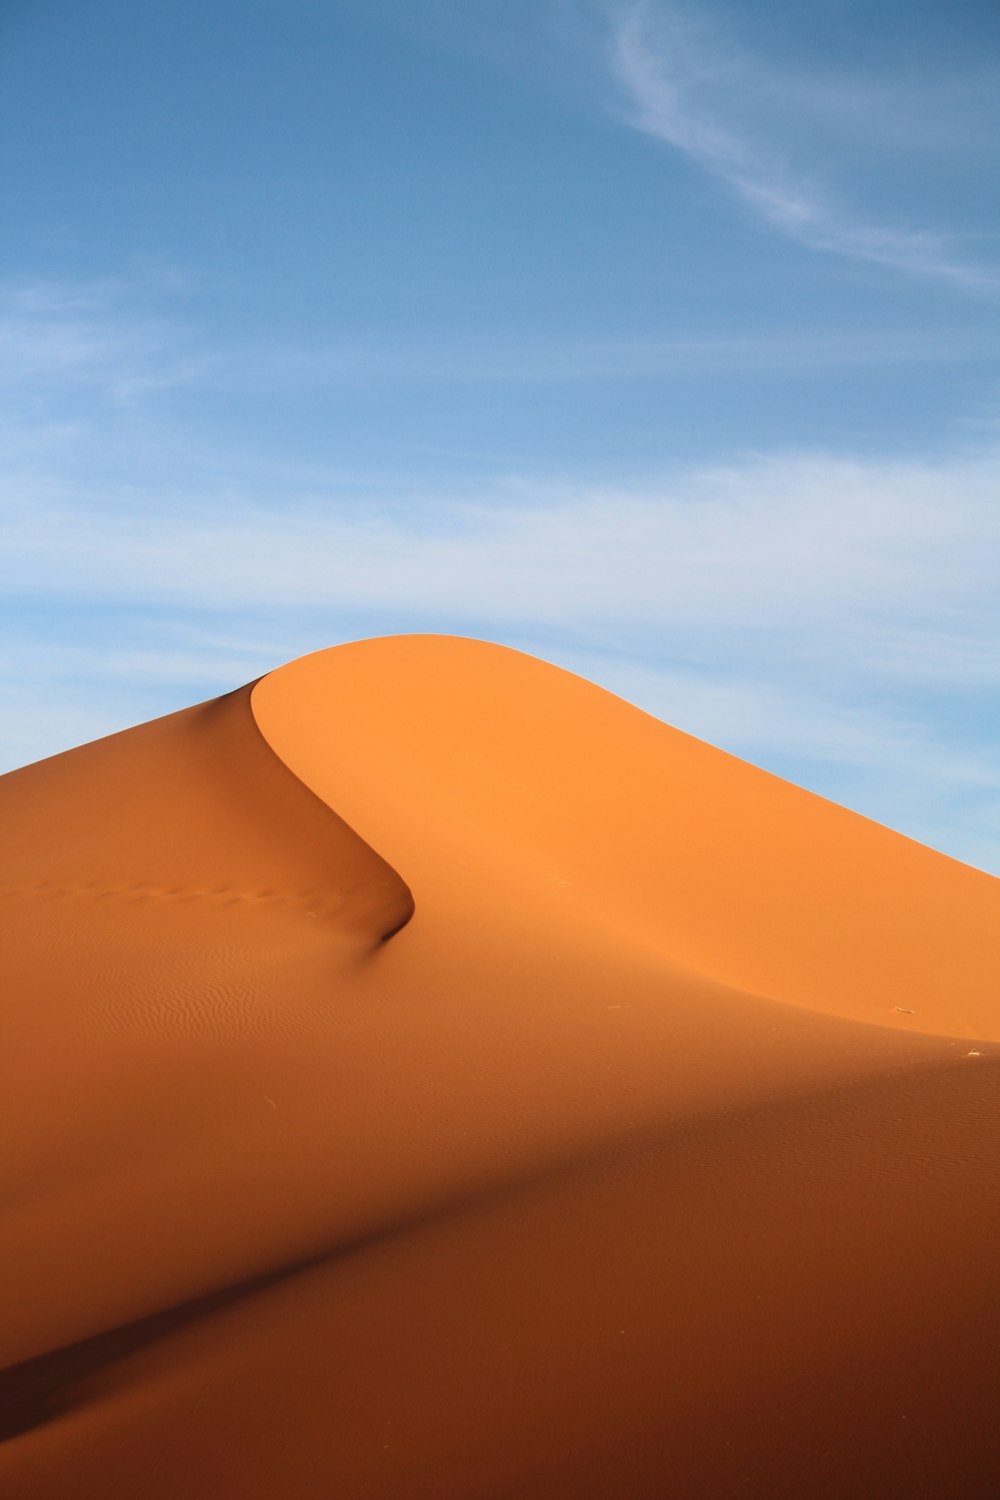 Fotografia do deserto durante o dia